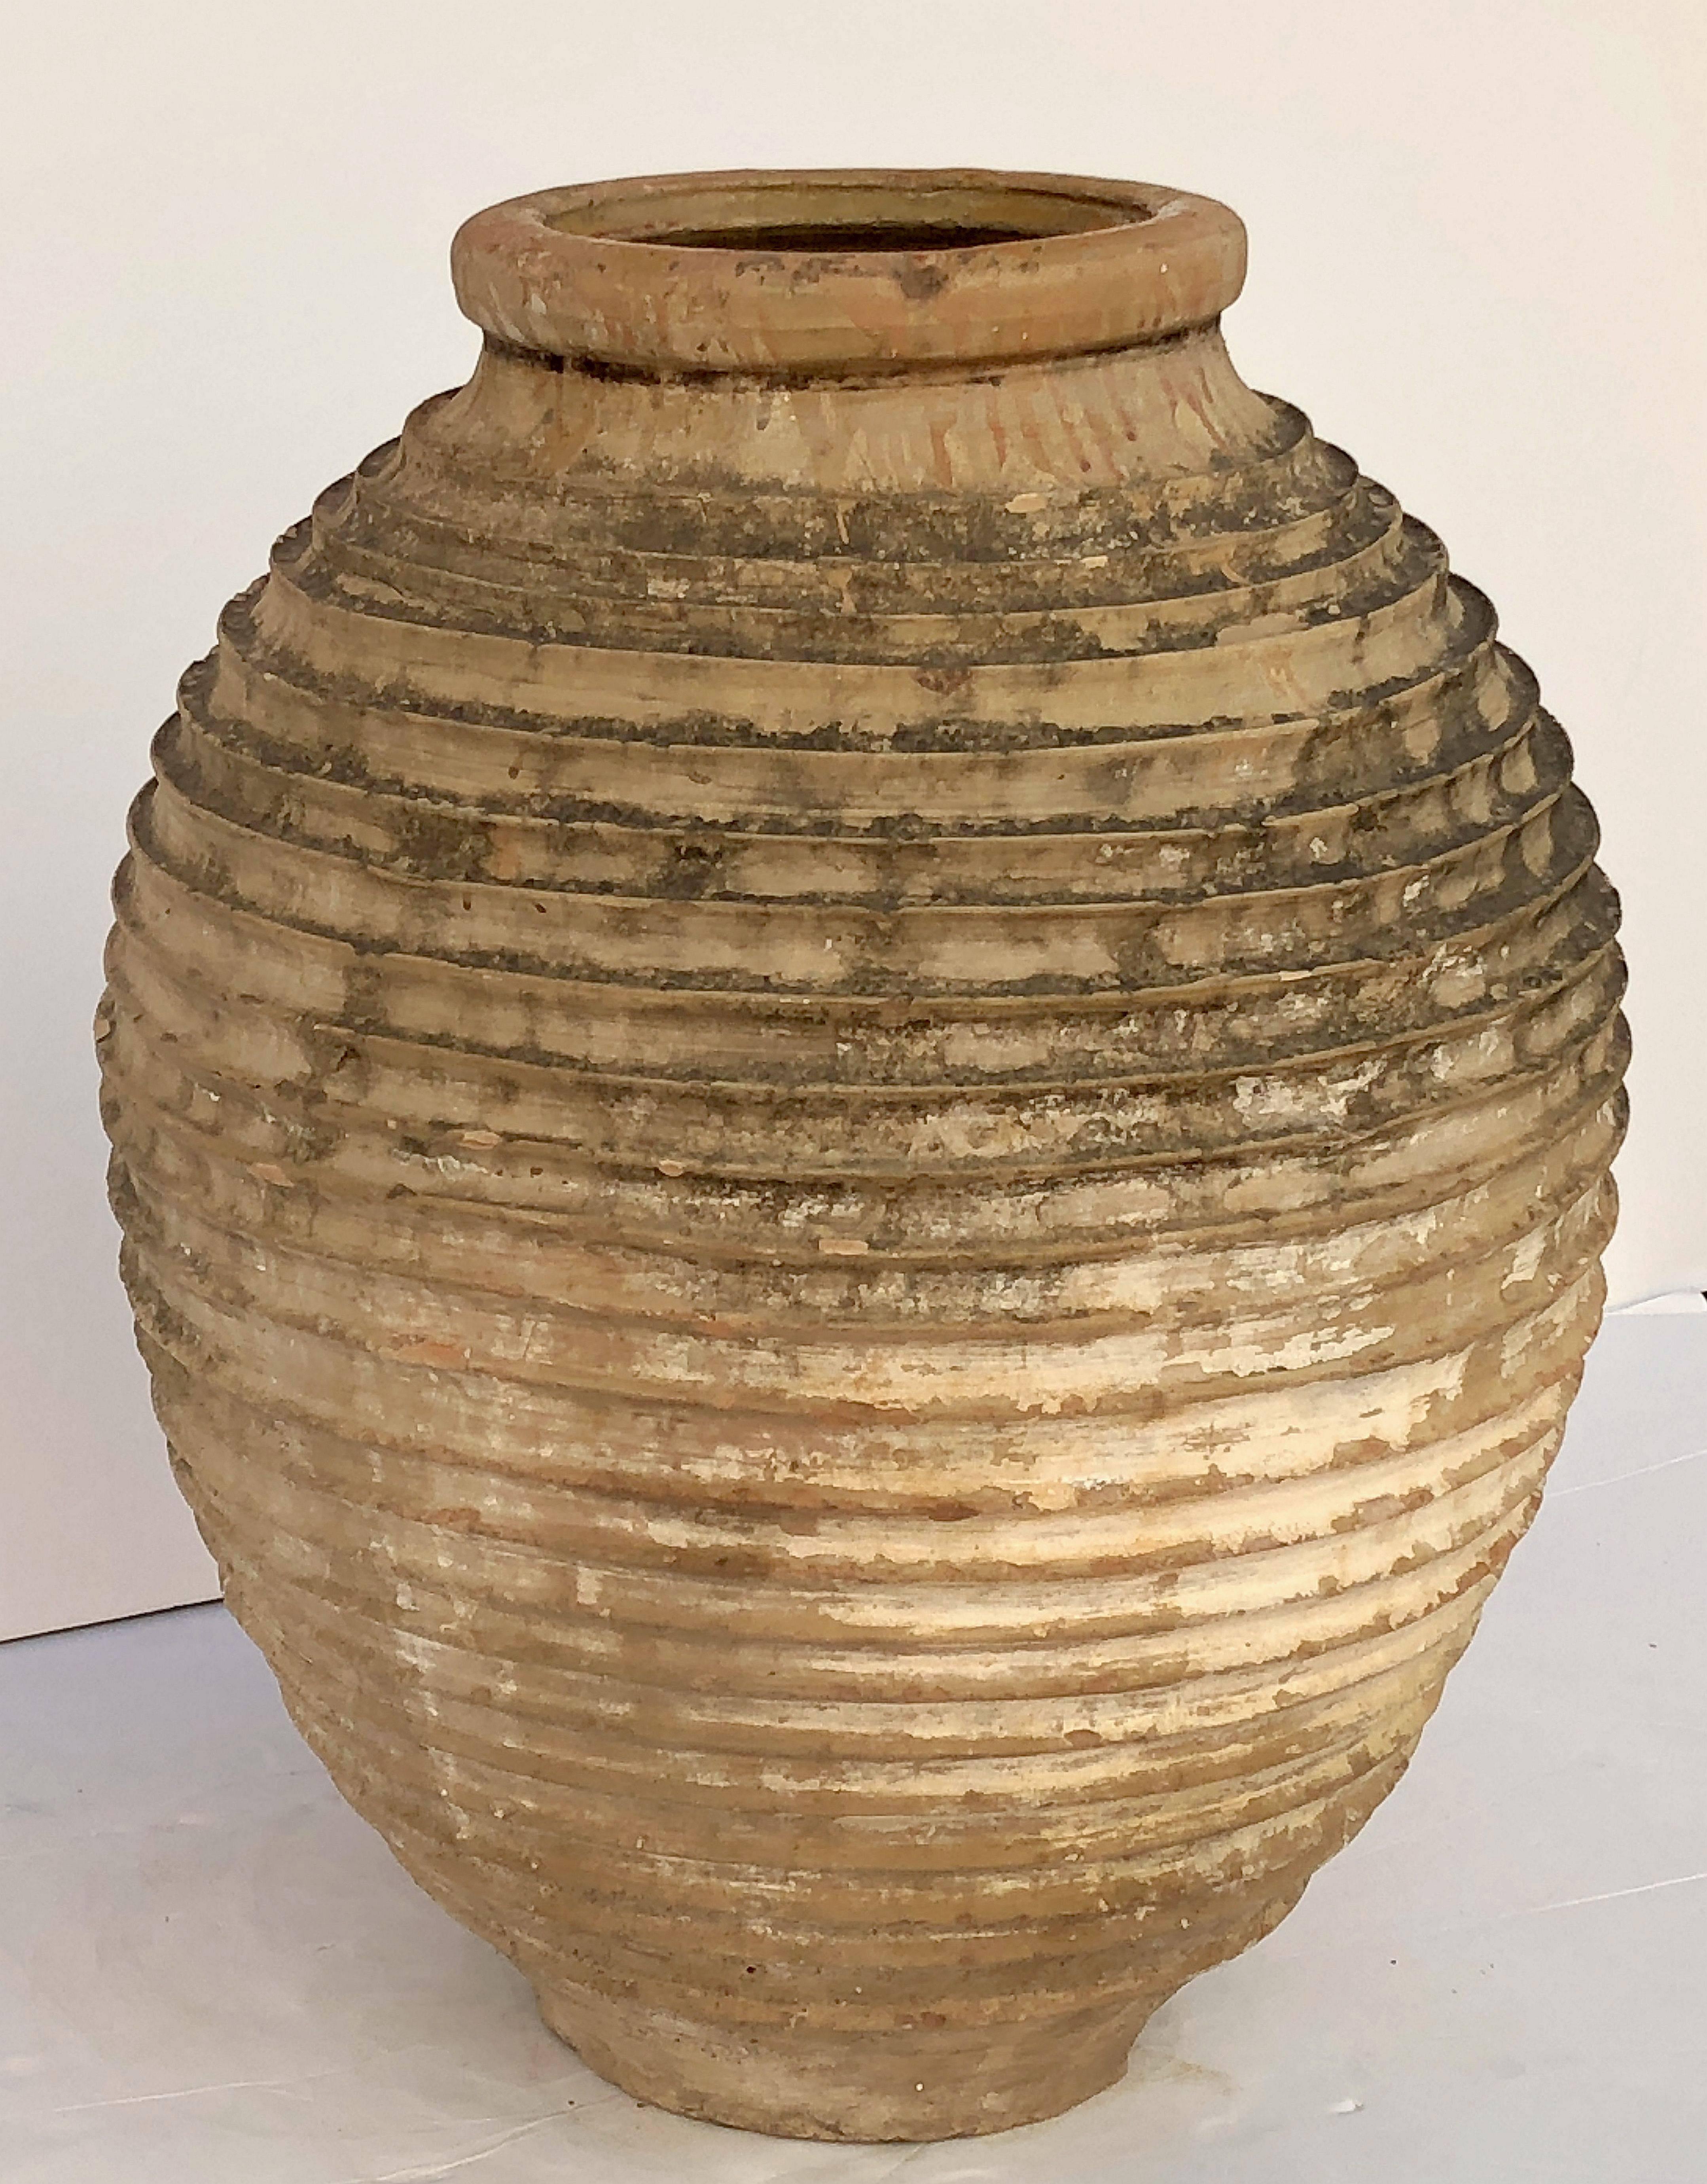 Une belle grande urne de jardin grecque (Amphora) ou une jarre à huile, avec un sommet émaillé sur un corps cylindrique strié et fonctionnel en tant qu'ornement de jardin ou jardinière d'intérieur ou d'extérieur.

D'autres jarres et pots de même